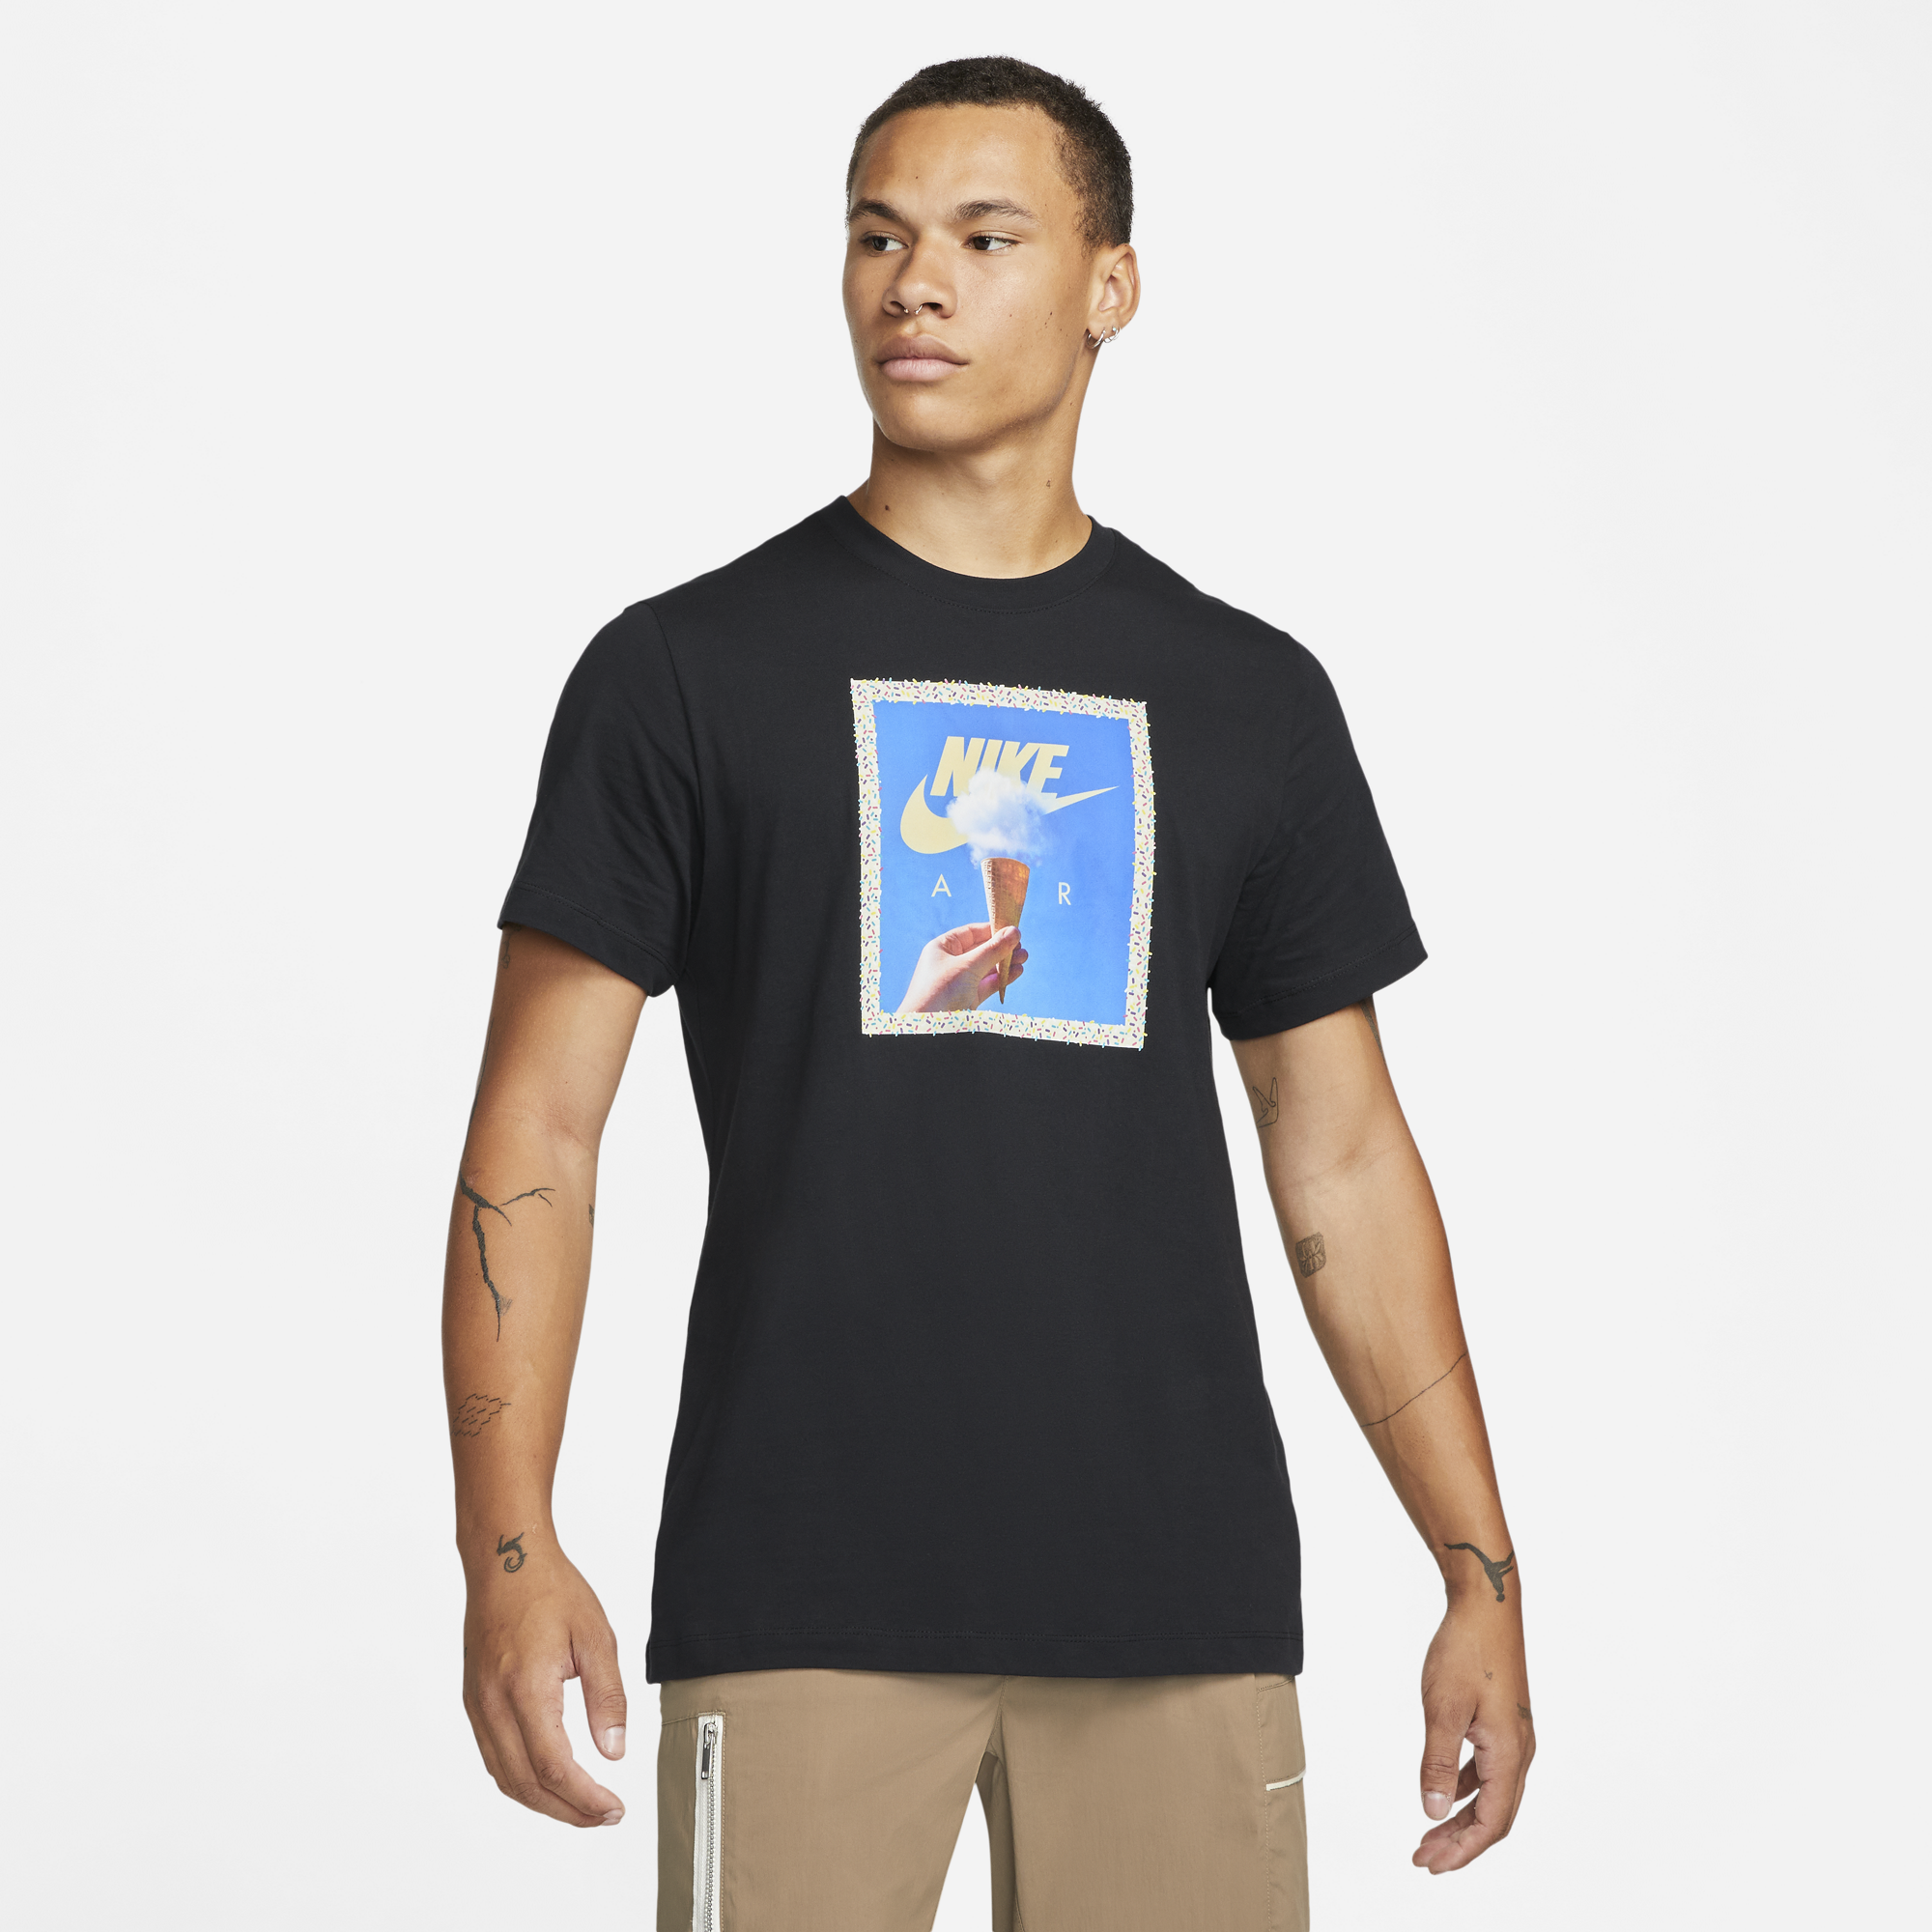 Nike Snow Cone Air T-Shirt - Men's